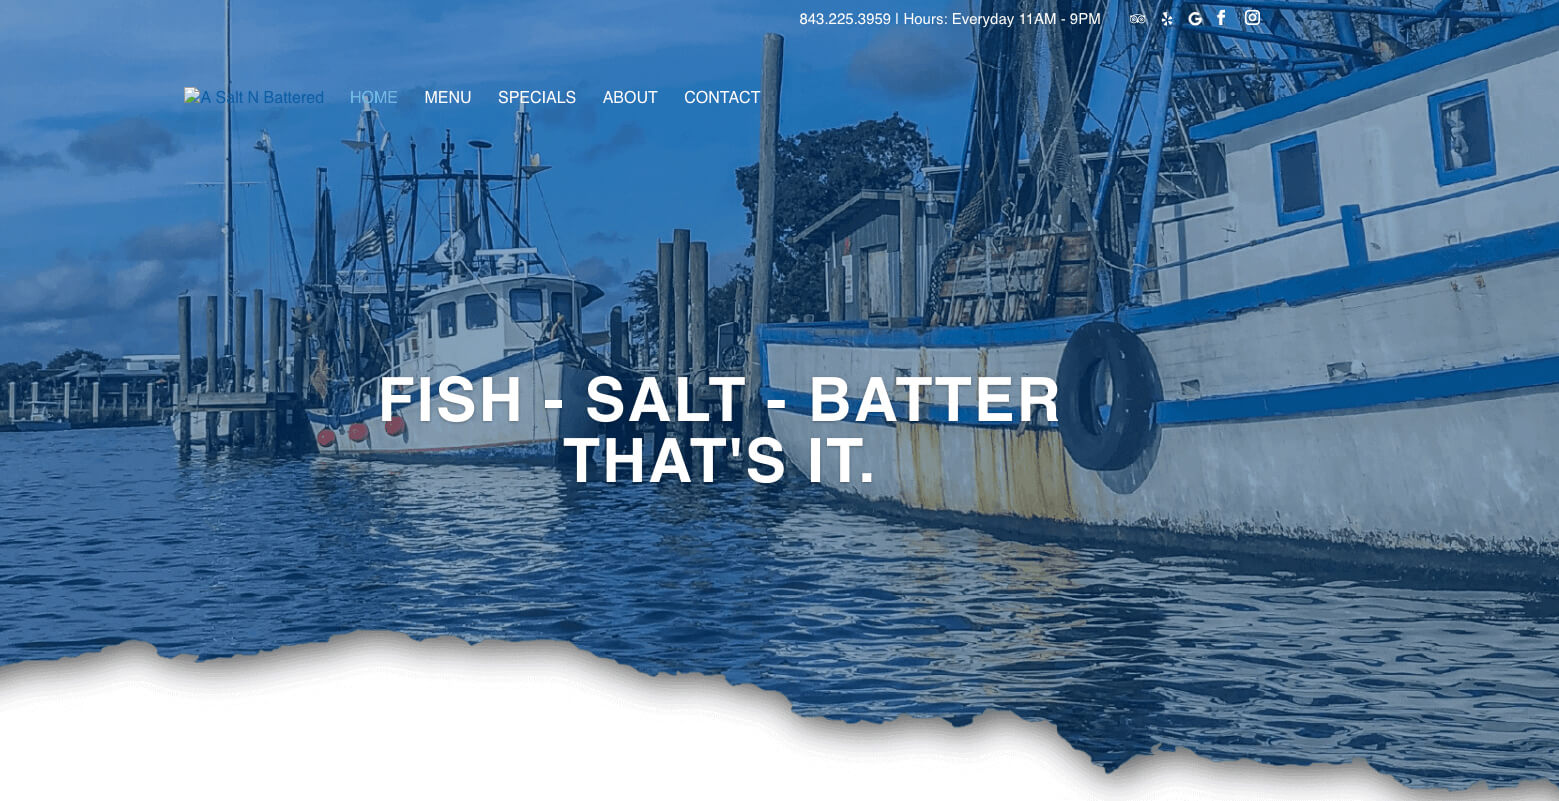 a salt n battered website design for restaurant